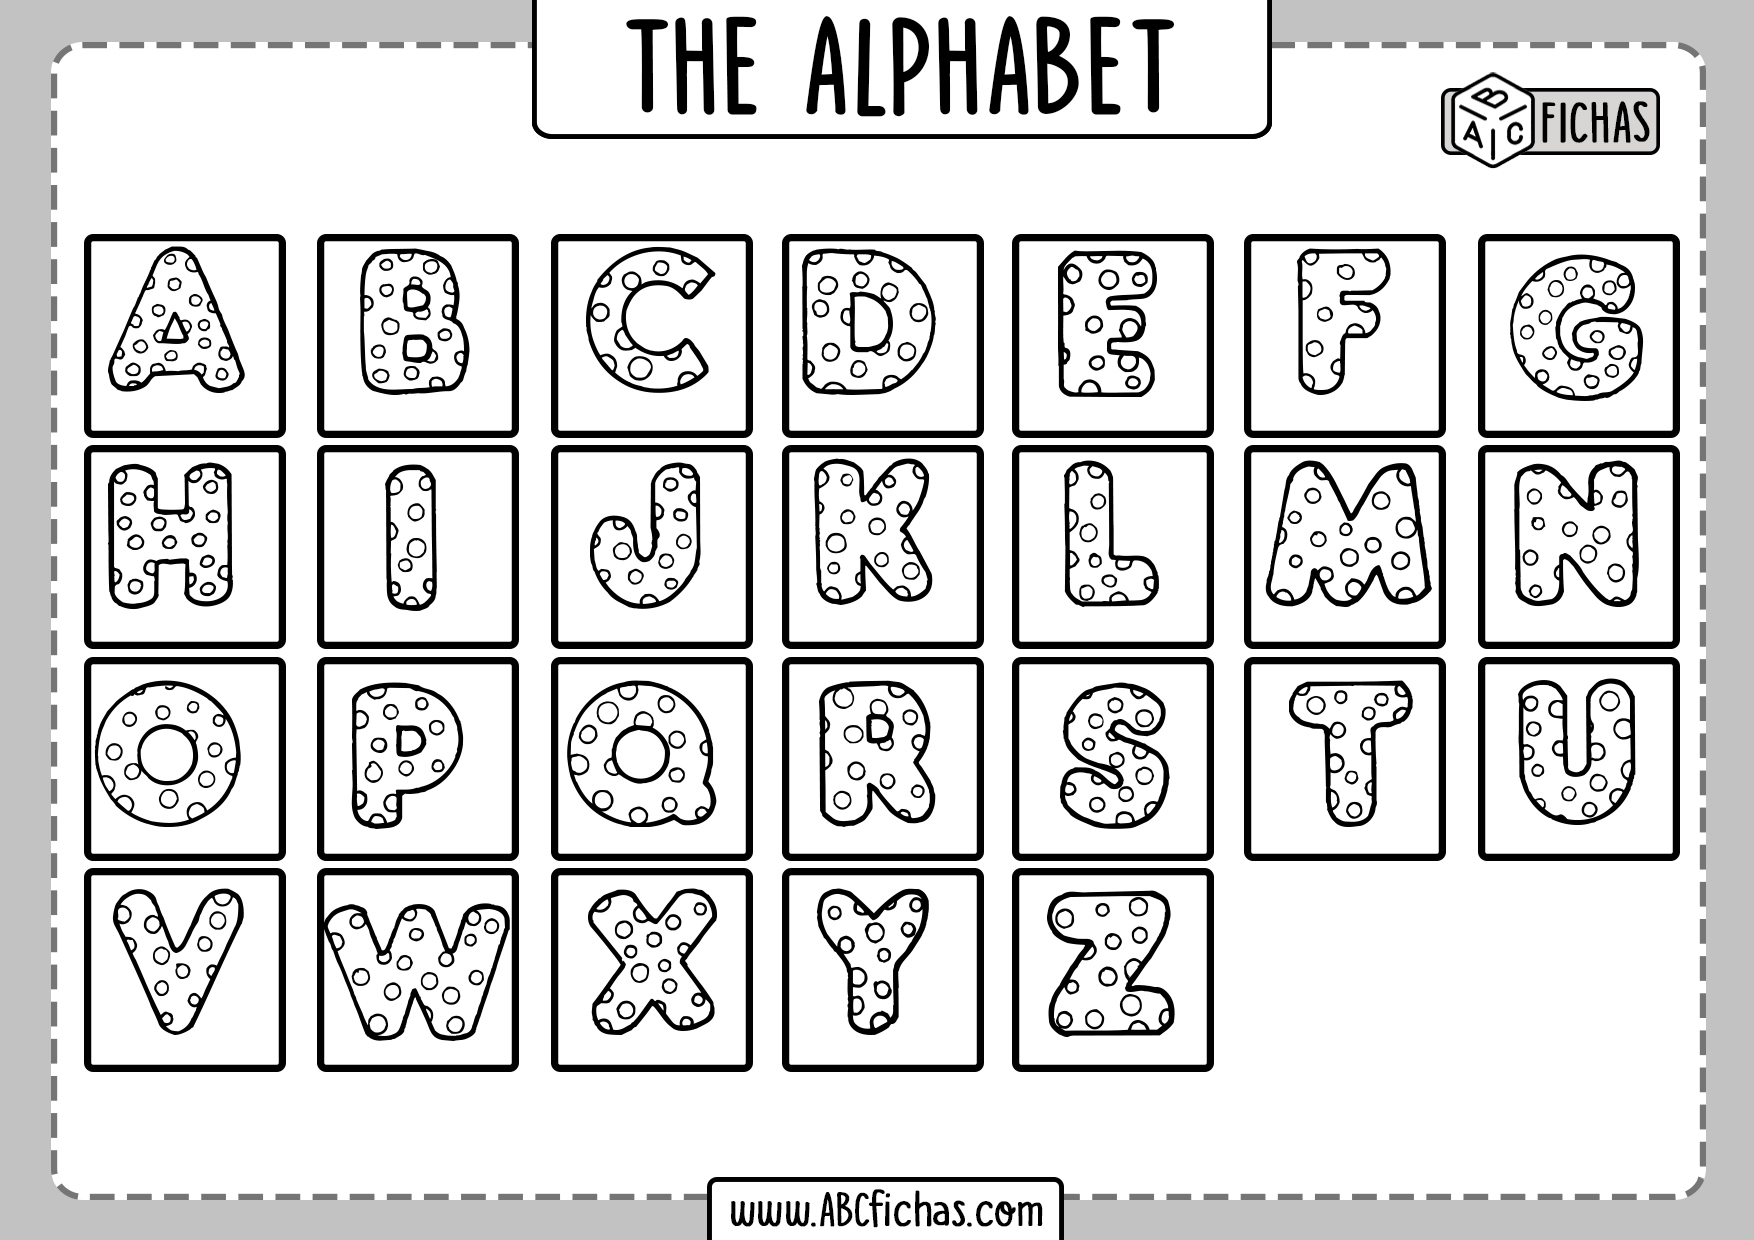 alphabet-worksheet-for-kids-abc-fichas